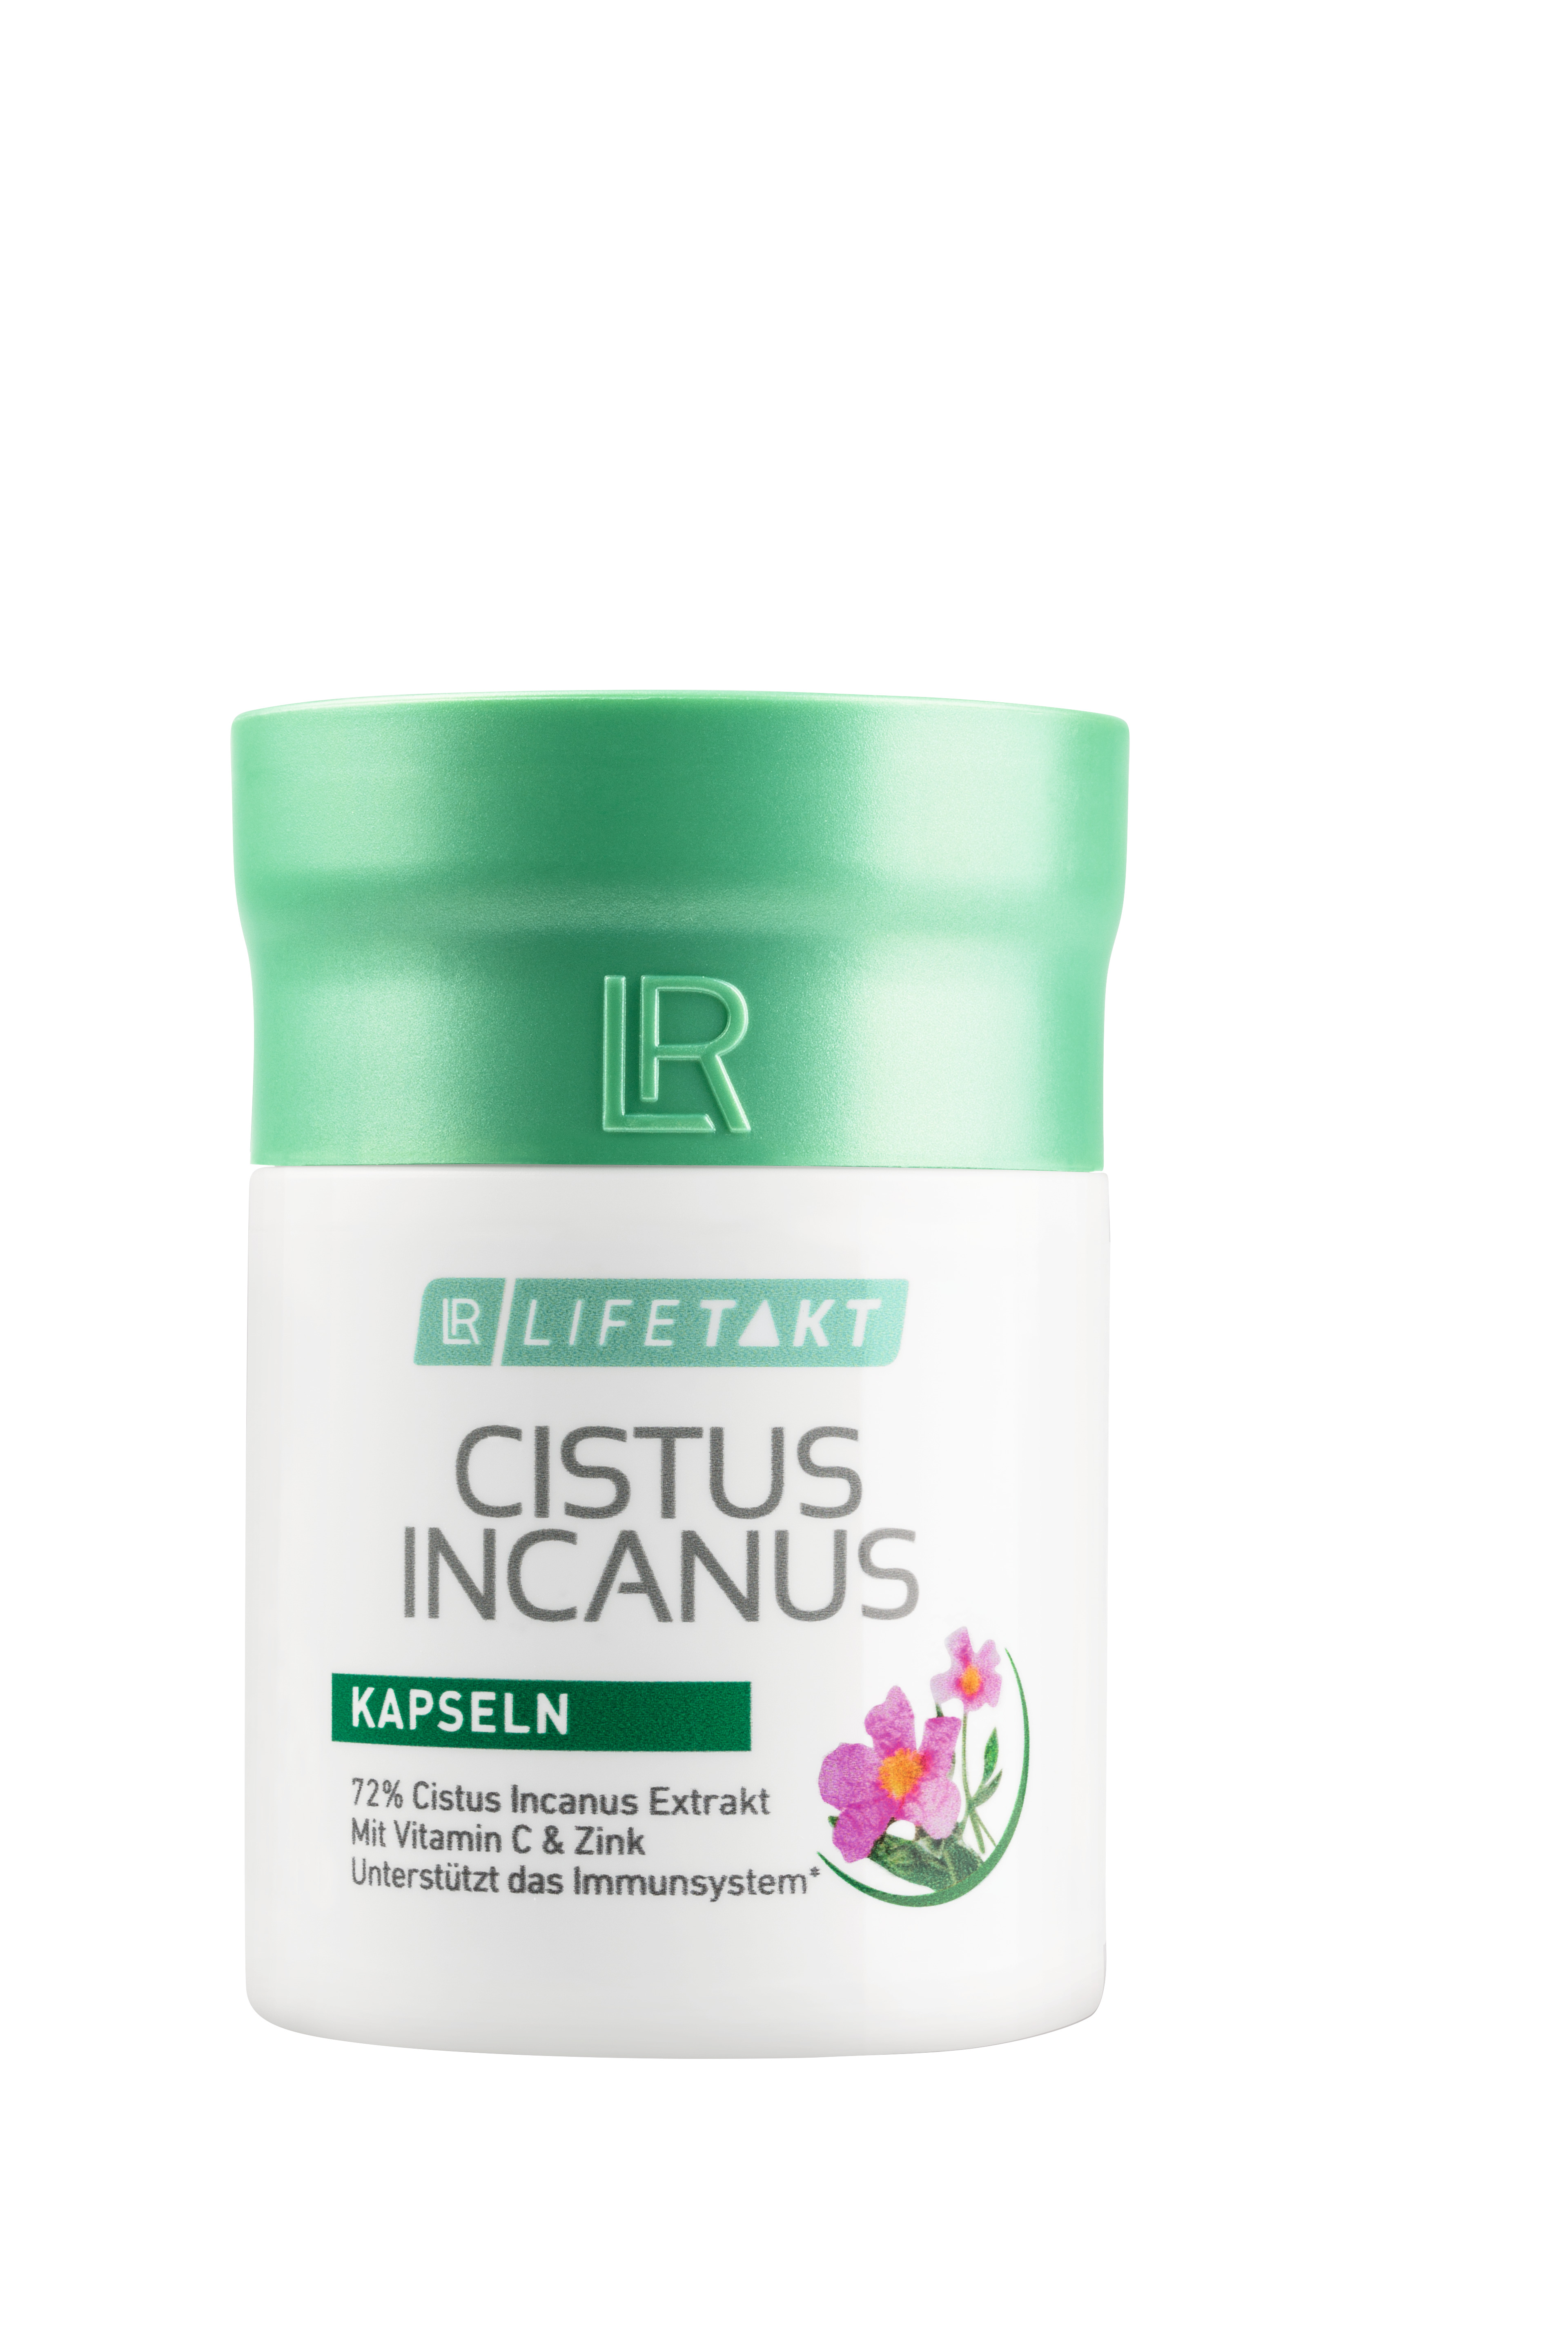 Cistus Incanus capsules